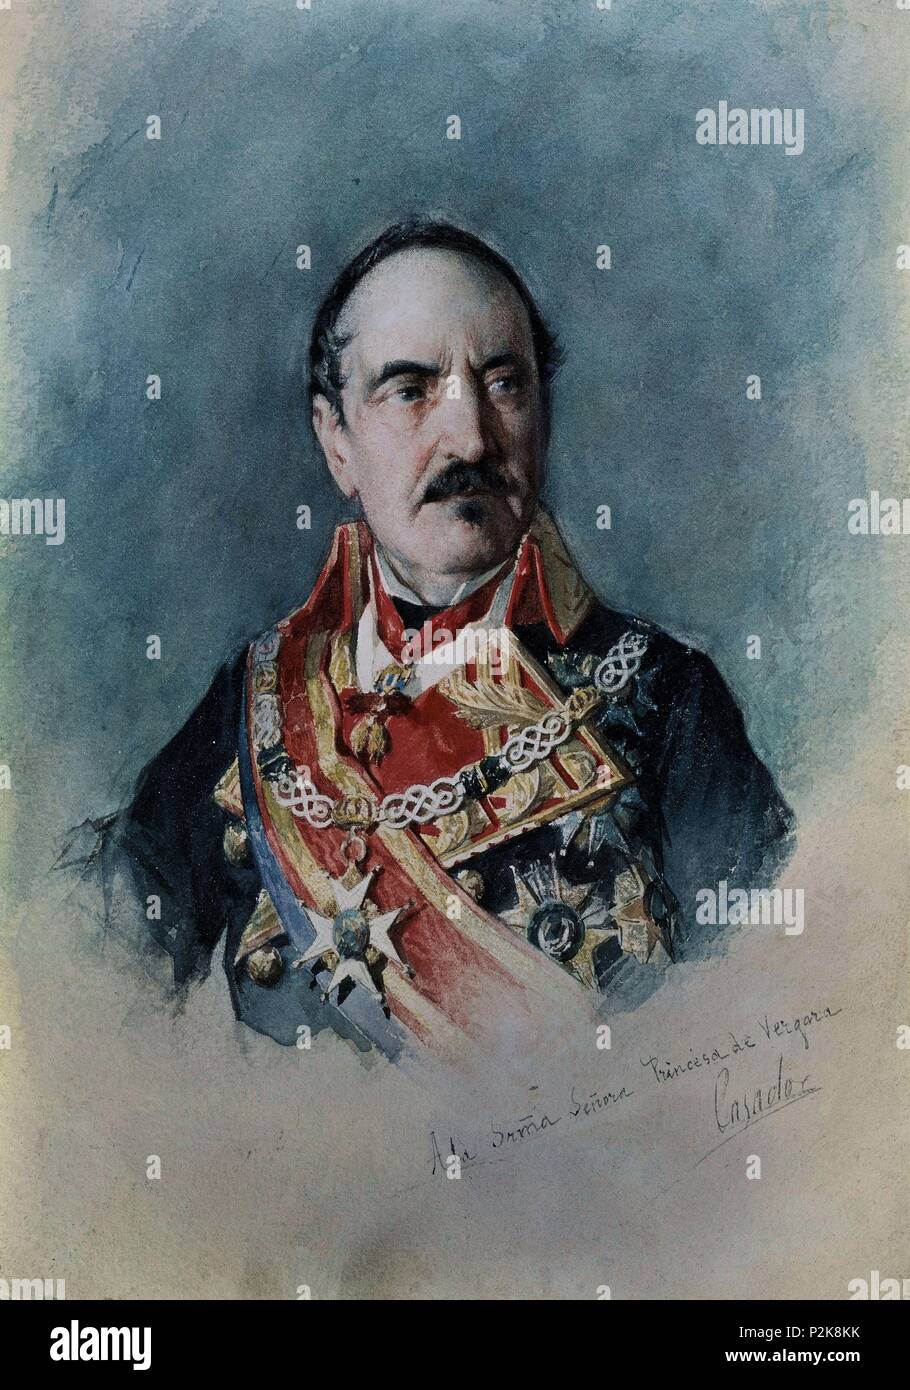 'The General Baldomero Espartero, Prince of Vergara', 1872, Watercolor on paper, 22,5 x 29,5 cm. Author: José Casado del Alisal (c. 1830-1886). Location: MUSEO ROMANTICO-PINTURA, MADRID, SPAIN. Stock Photo